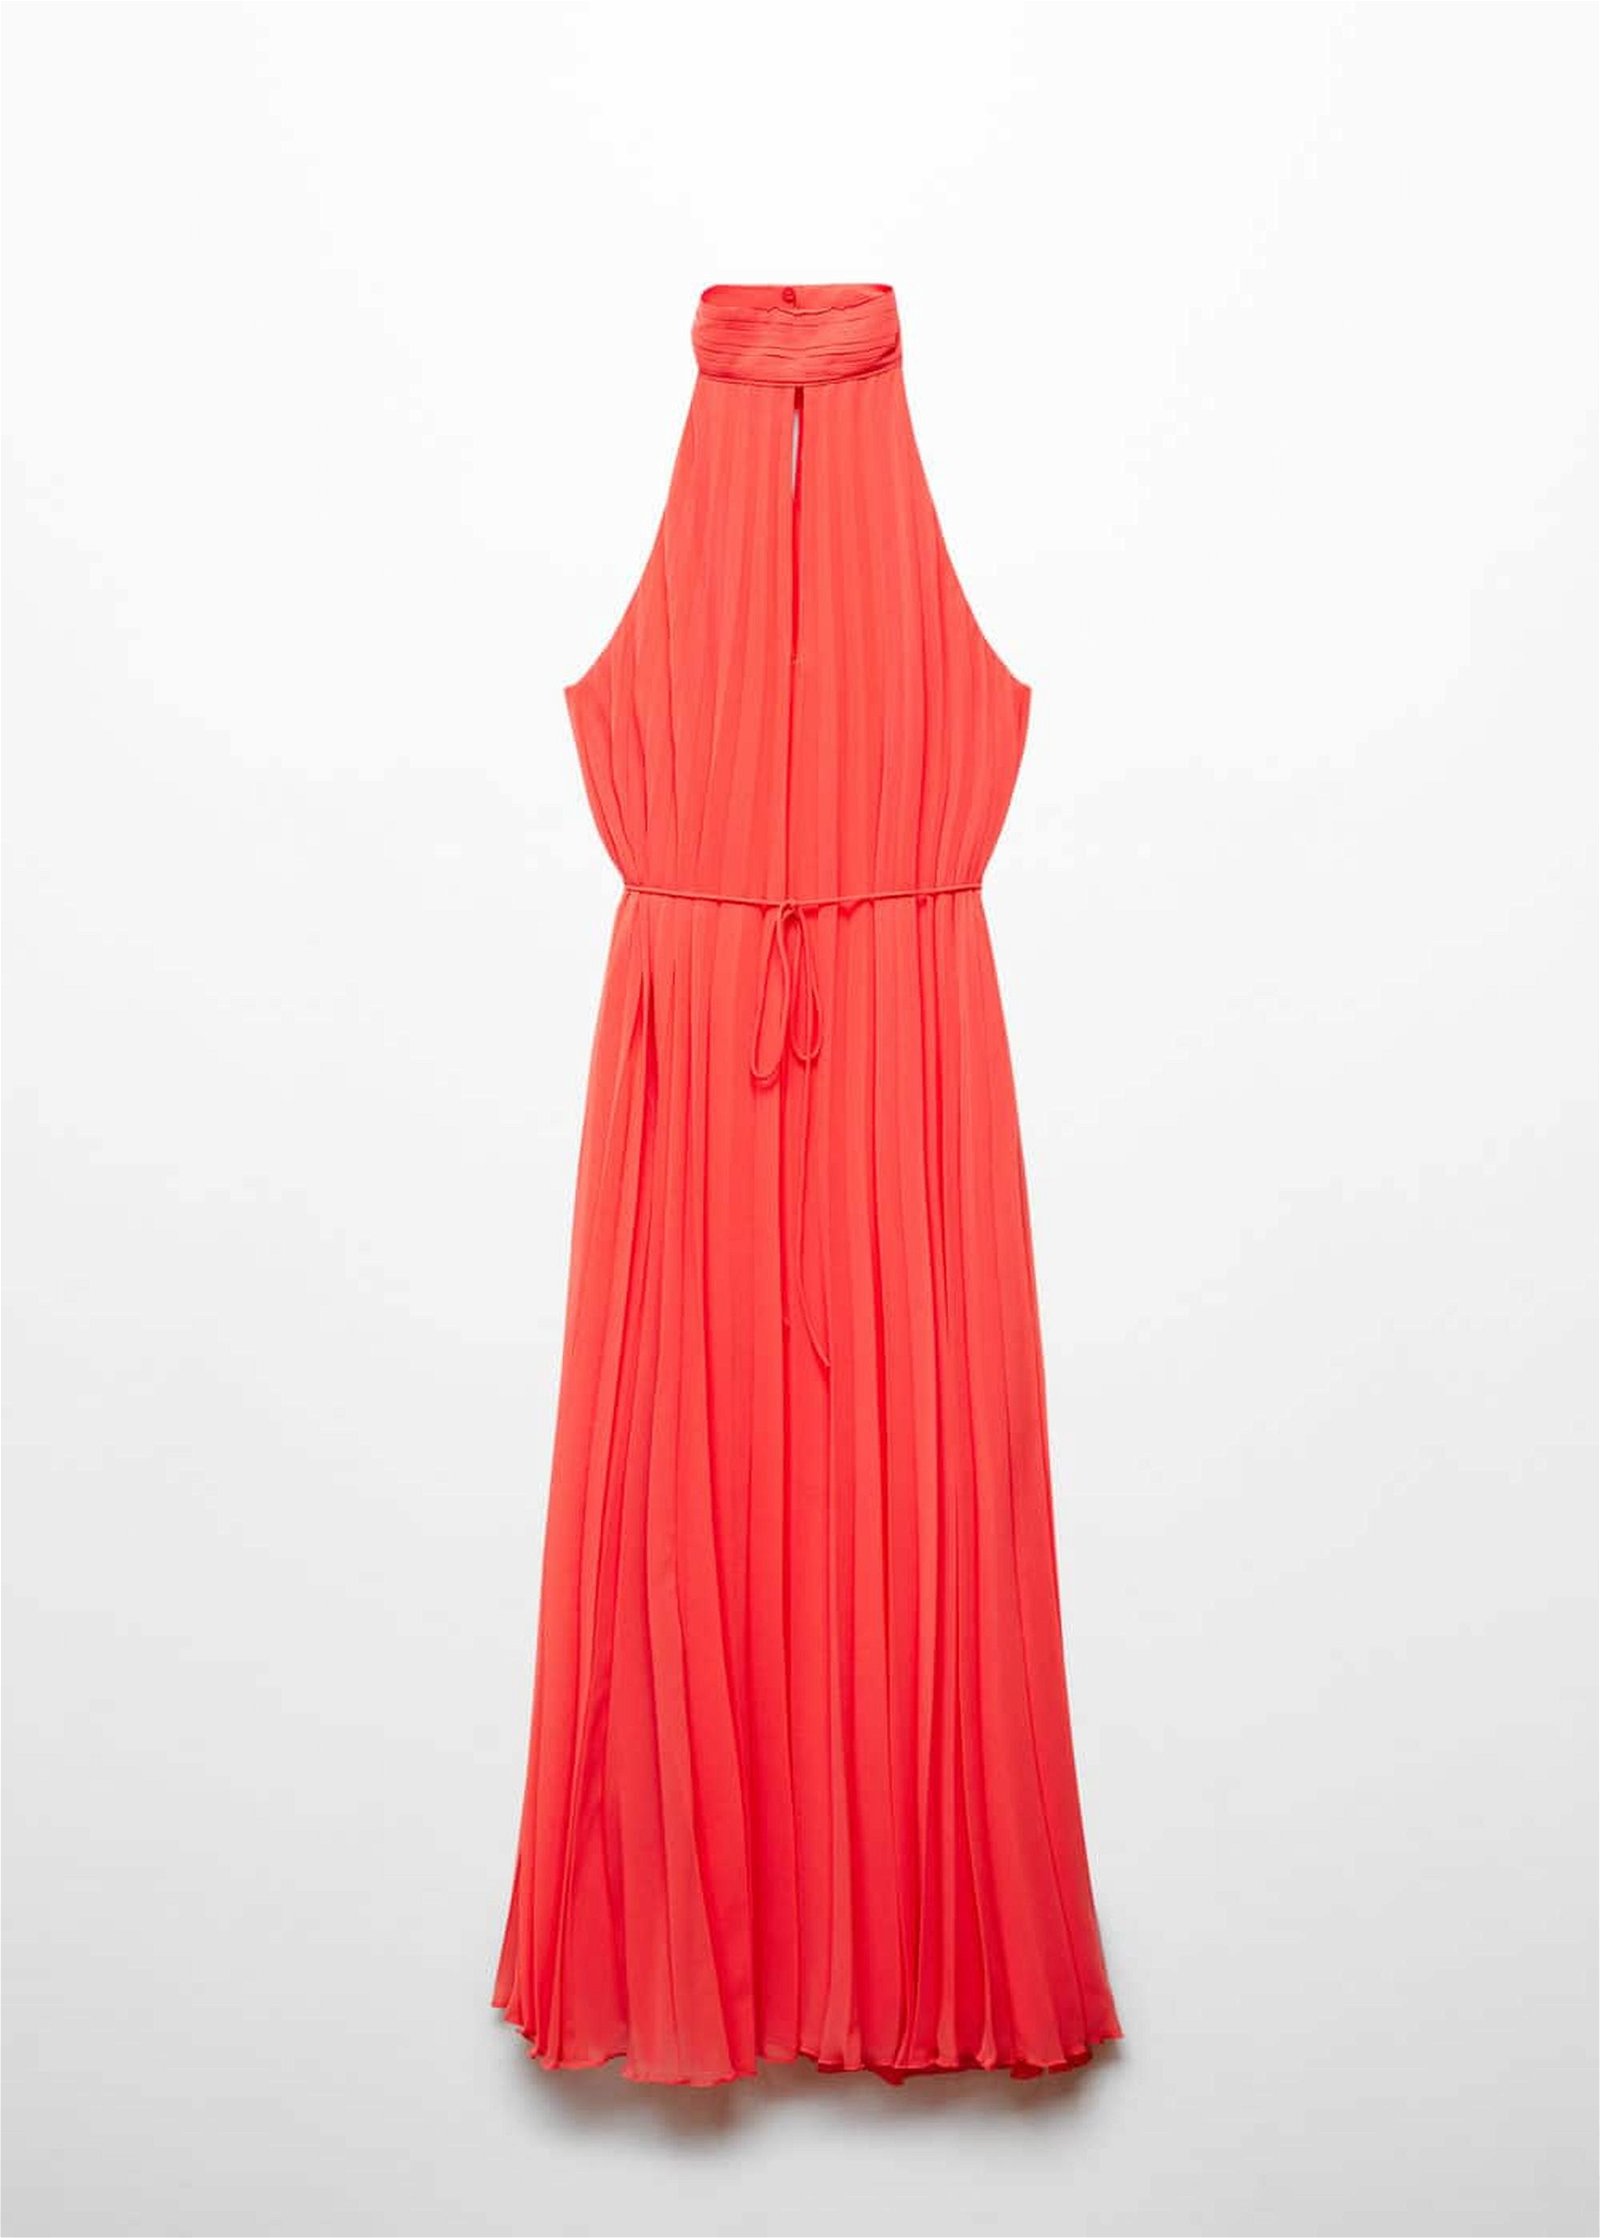 Mango Kadın Pilili Boyundan Bağlı Elbise Mercan Kırmızısı